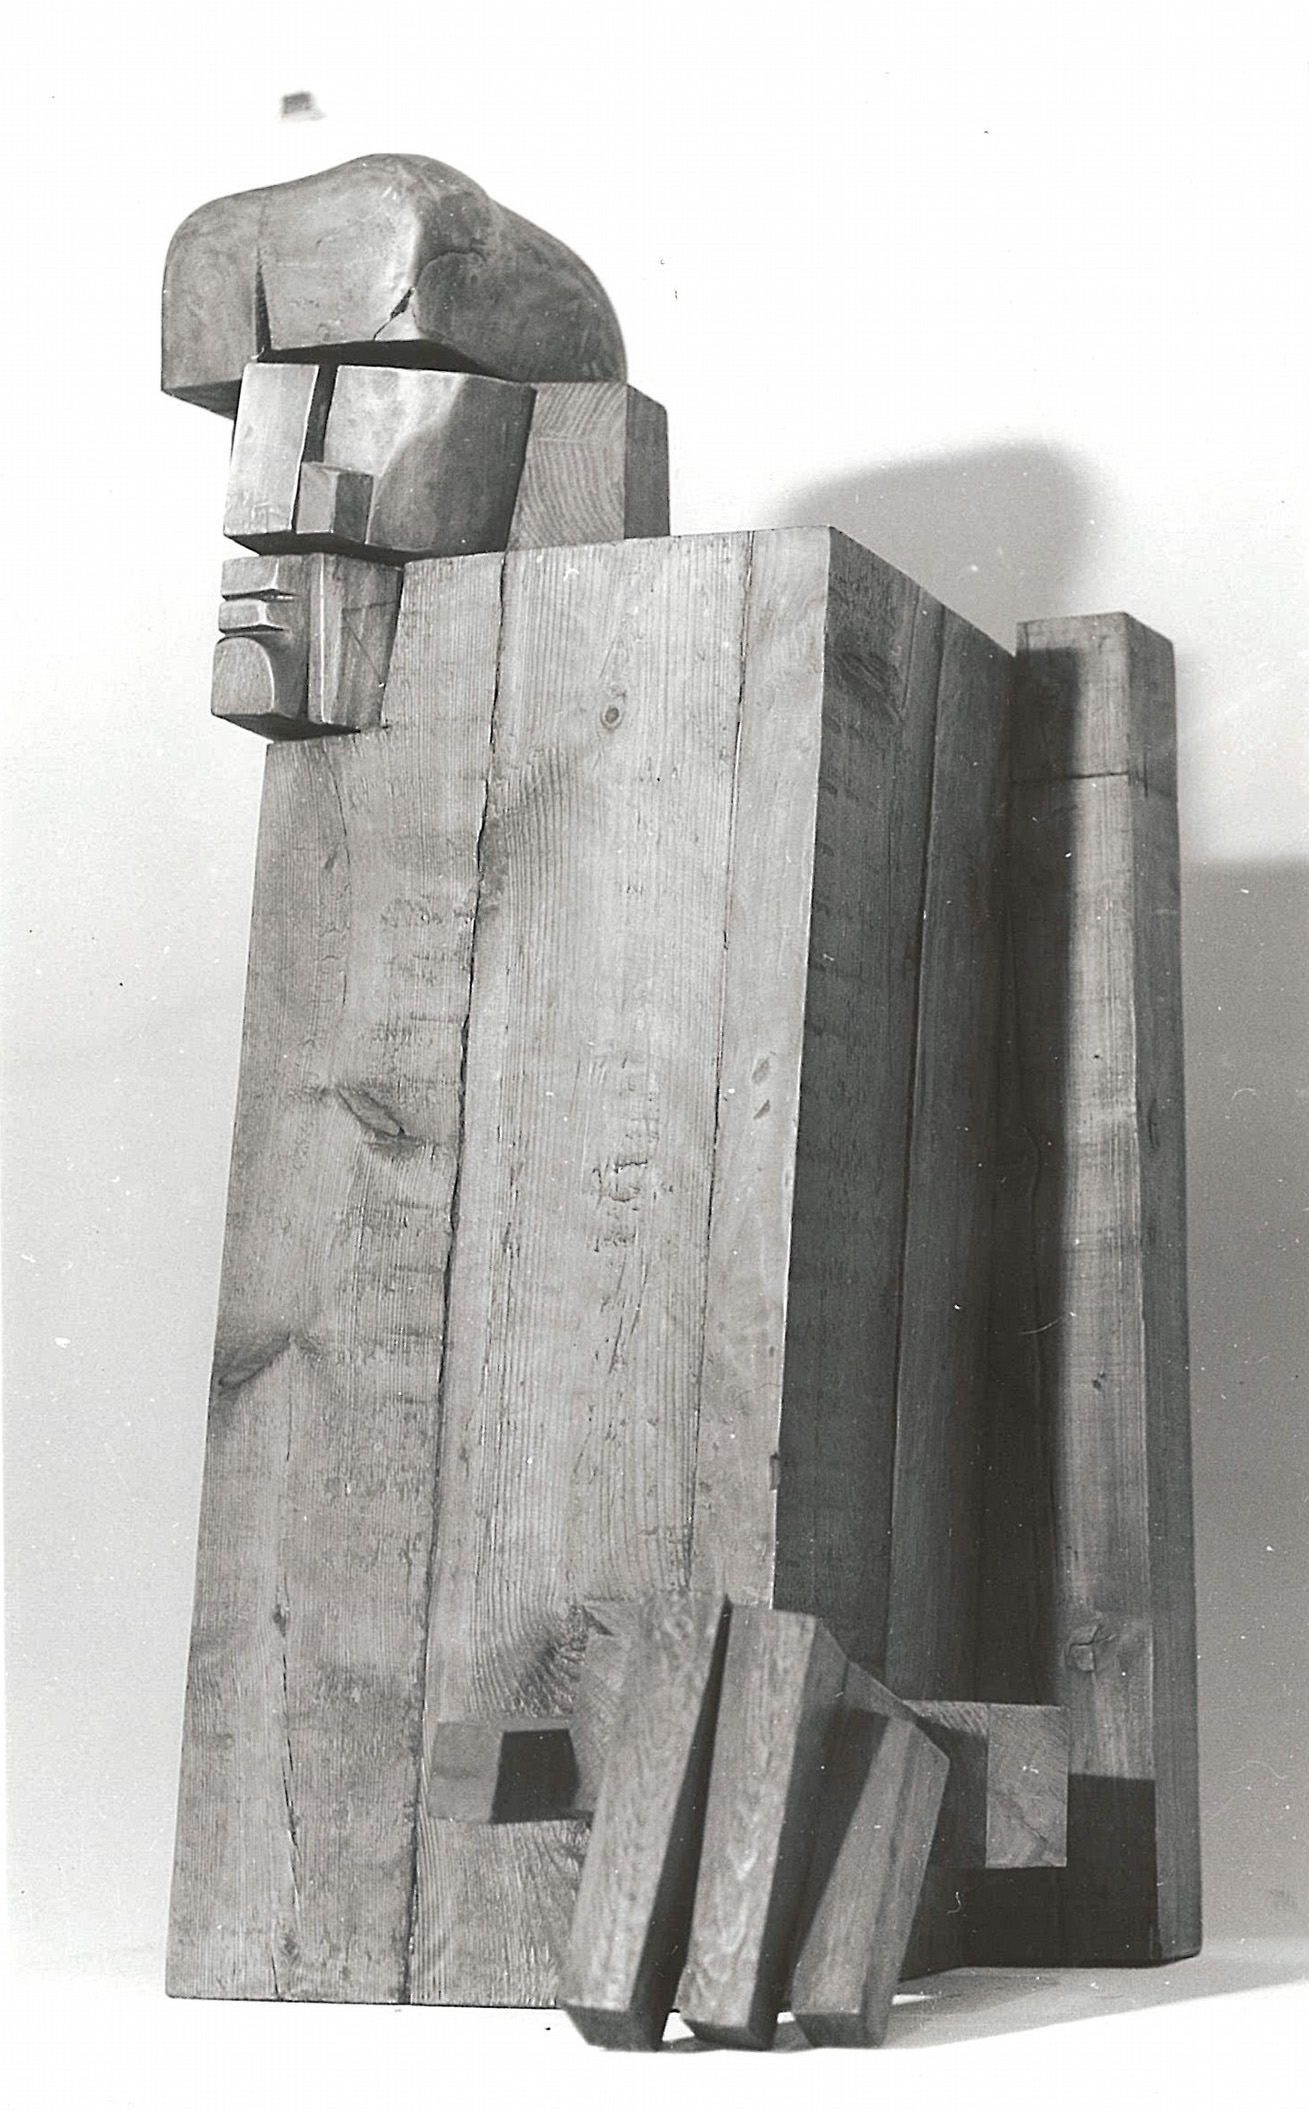 Komplet gabinetowy, 1893/1984 rok, drewno klejone; wystawa indywidualna rzeźby w Galerii "Pryzmat" - ZPAP Kraków